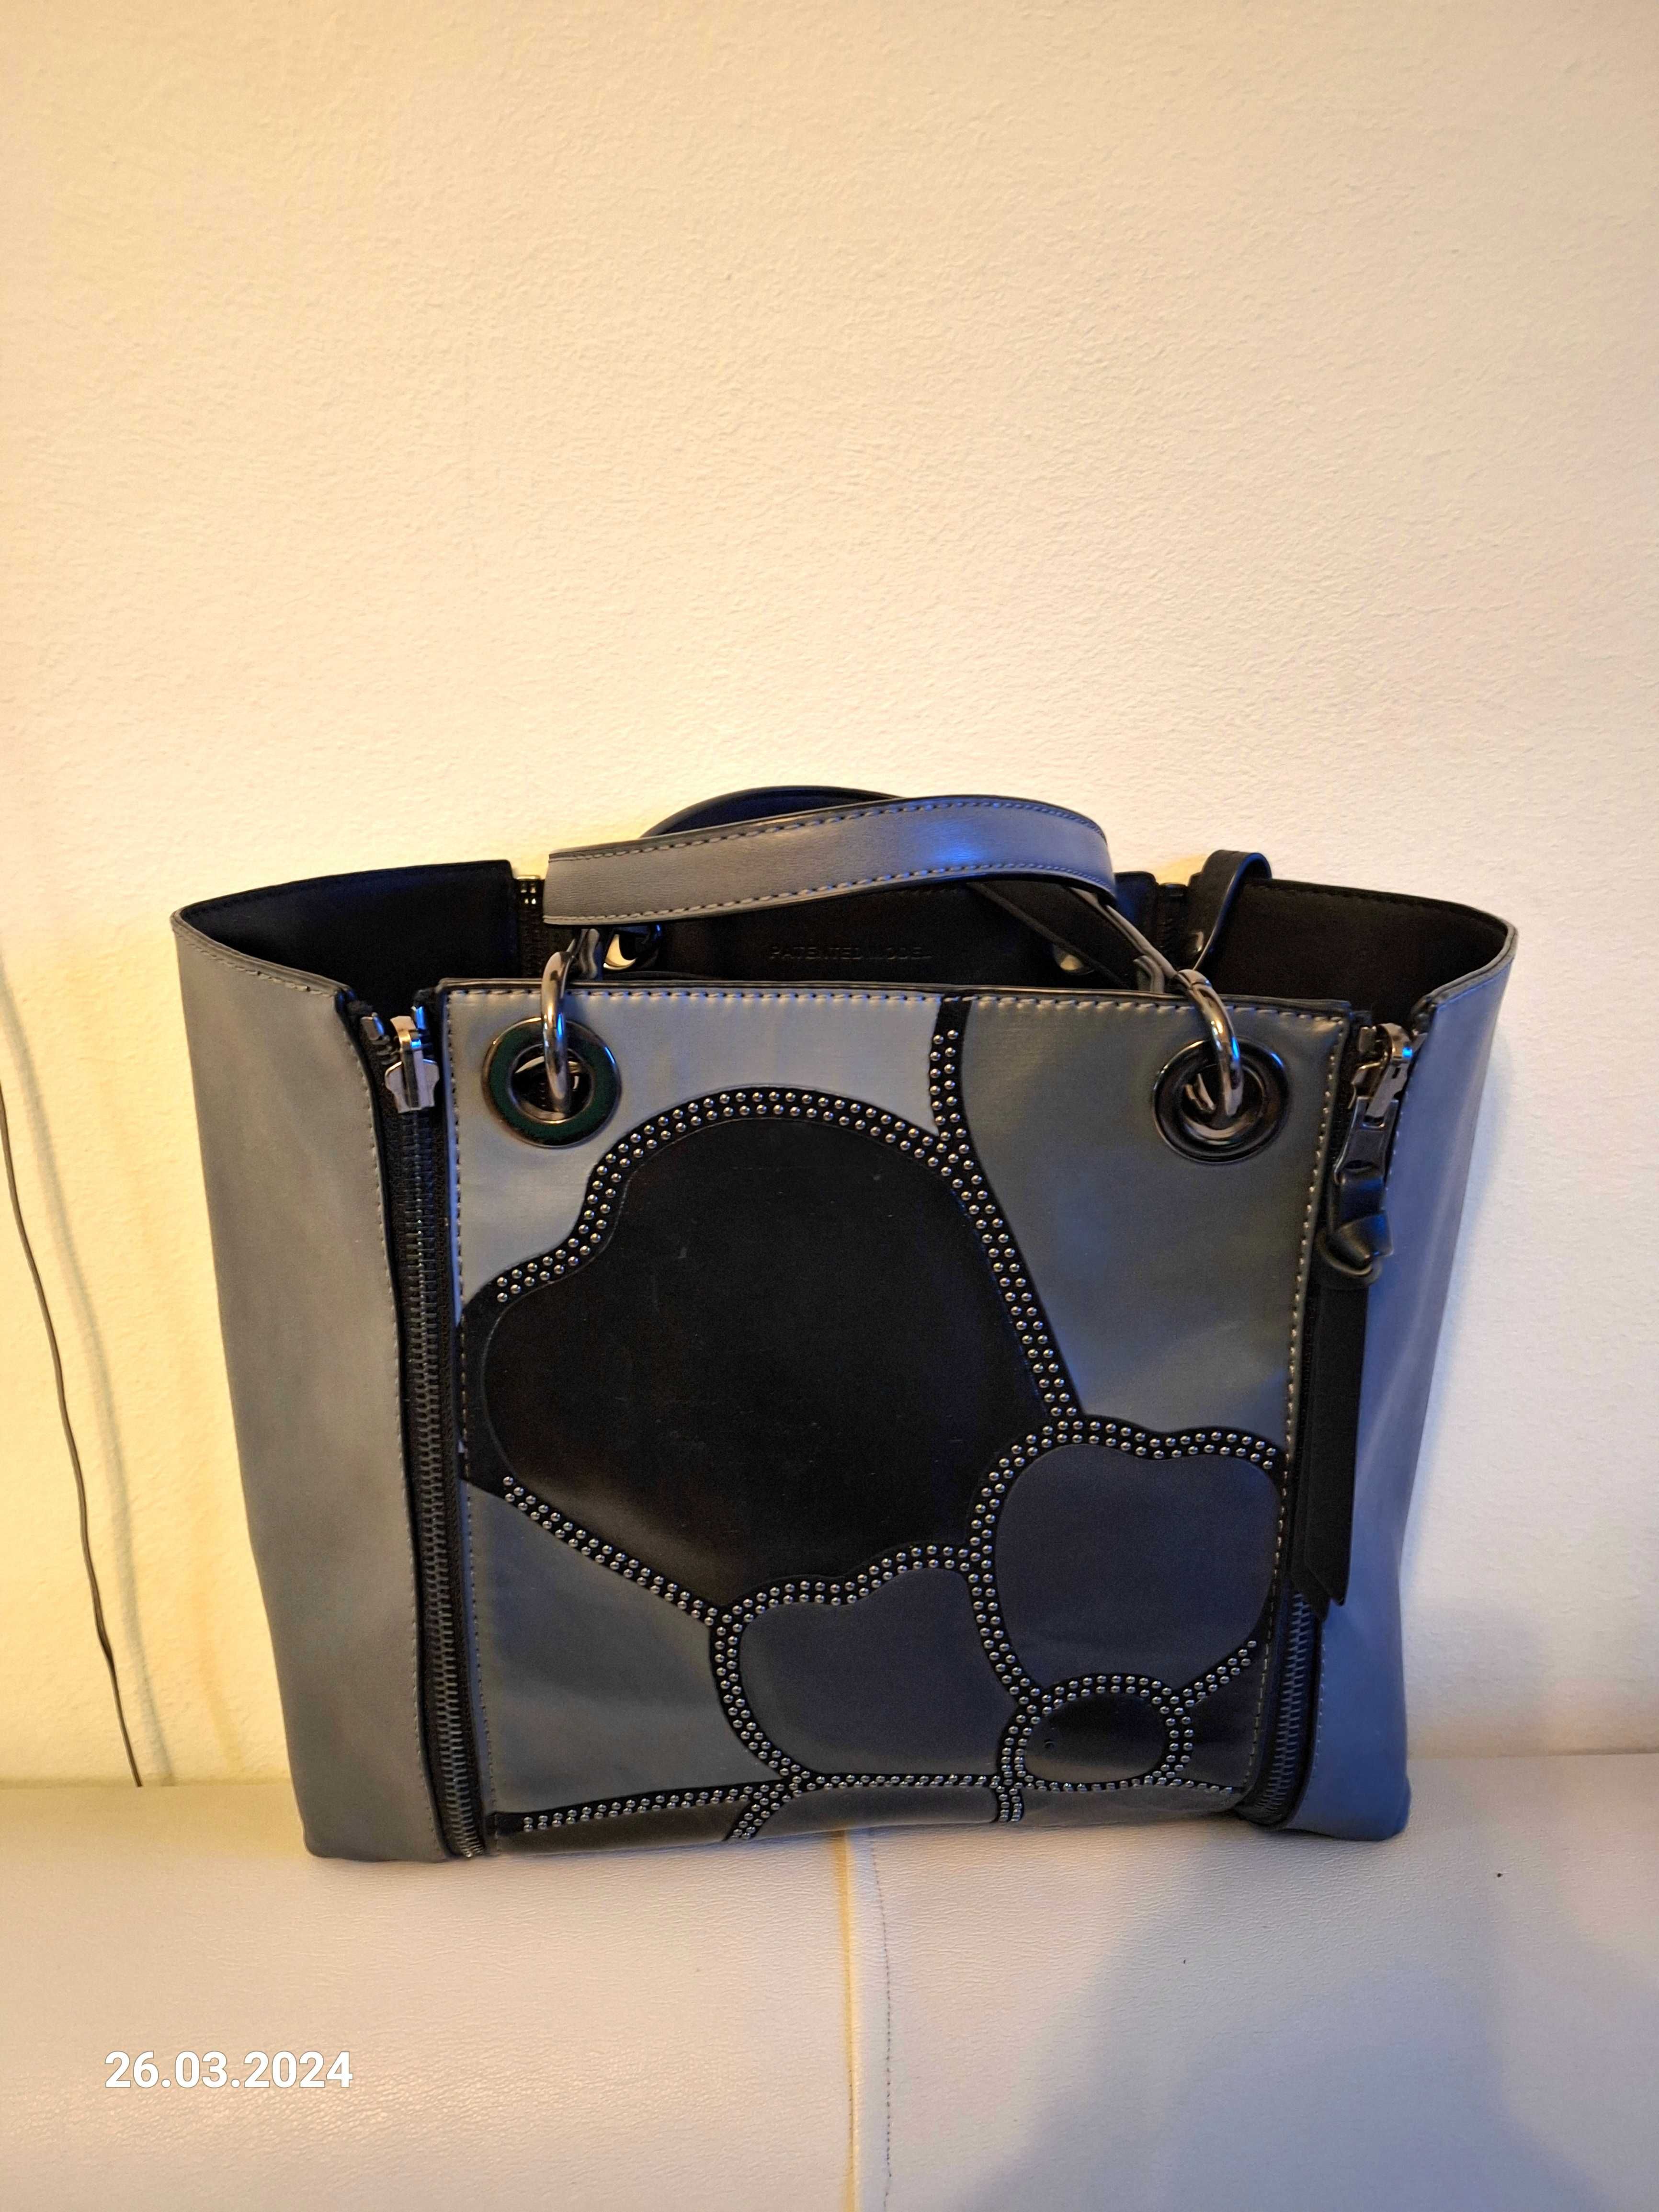 geanta cu doua modalități design - neagra sau gri cu negru